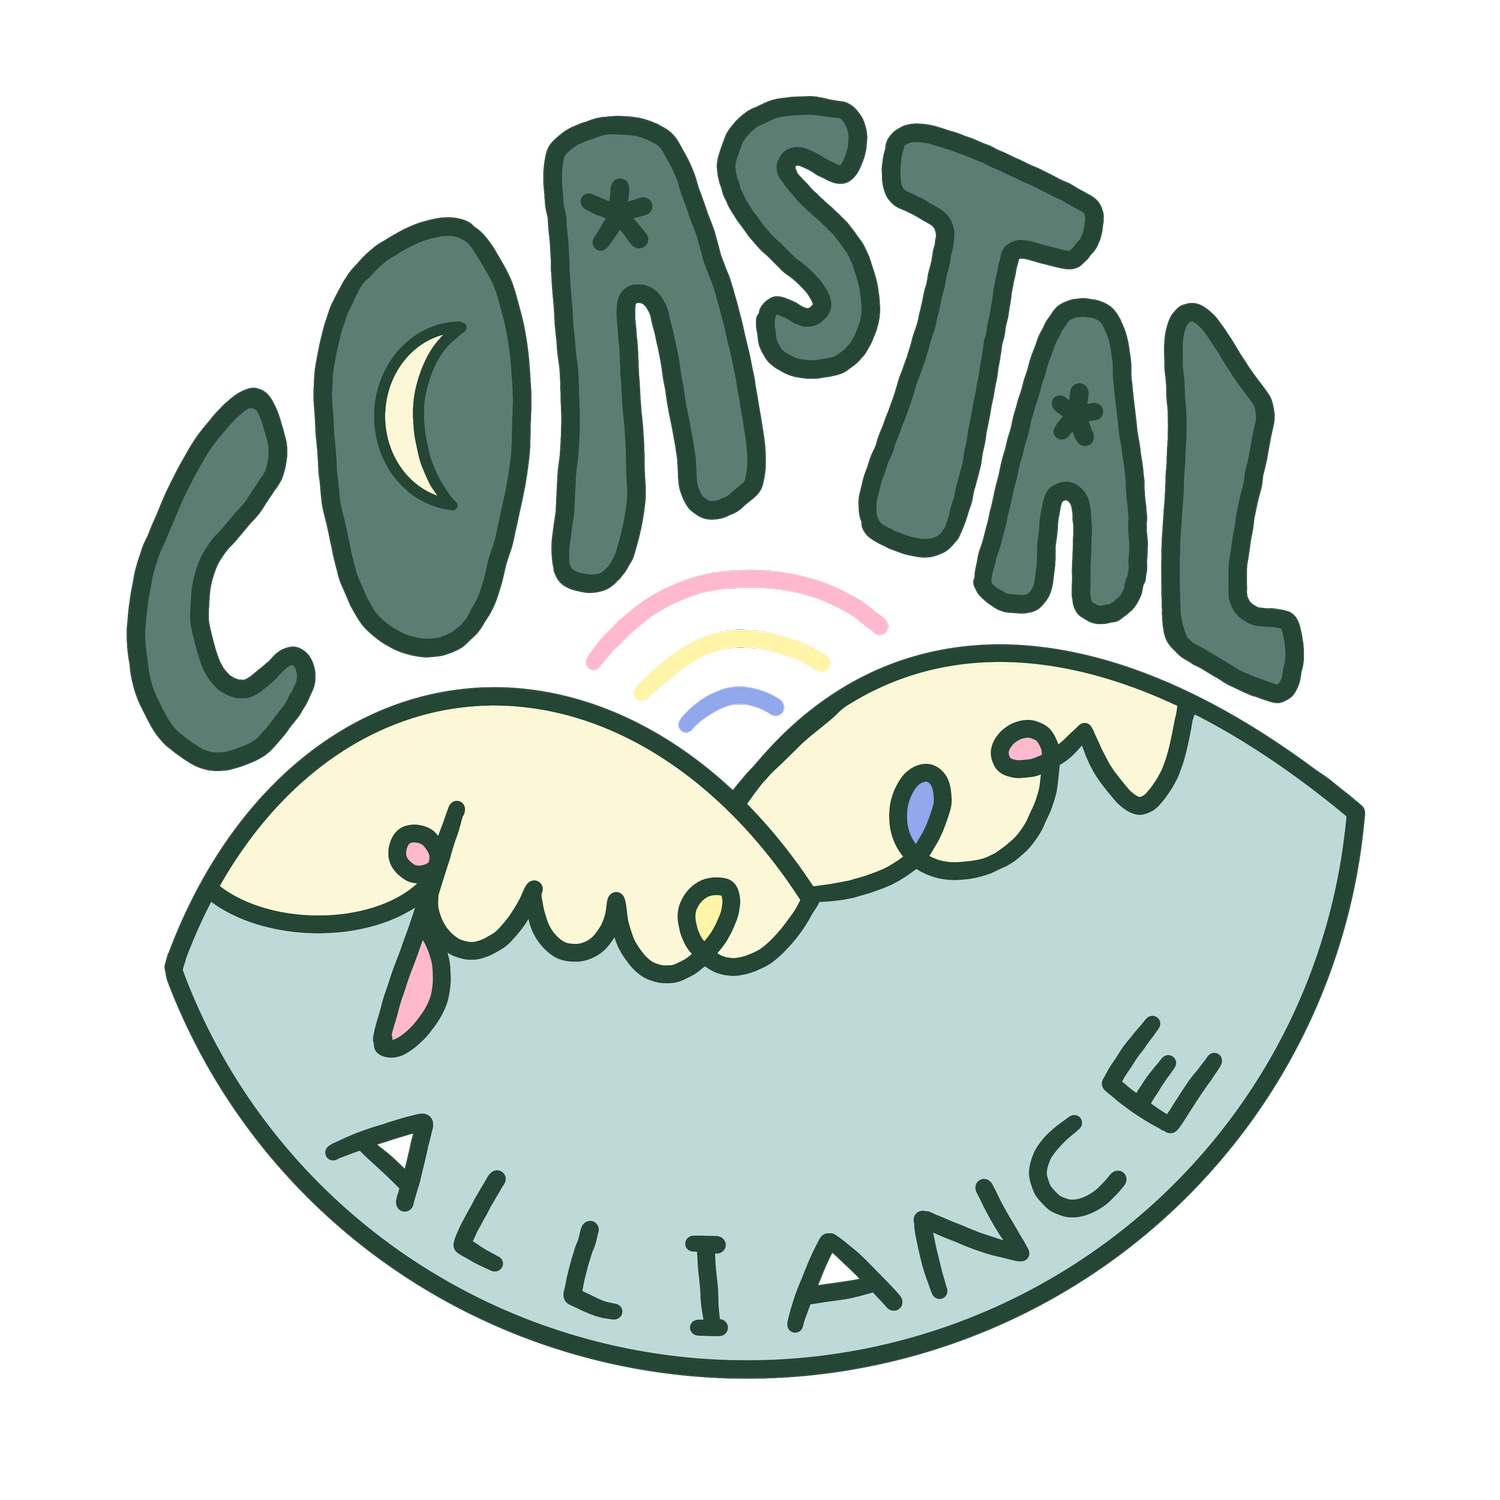 Coastal Queer Alliance